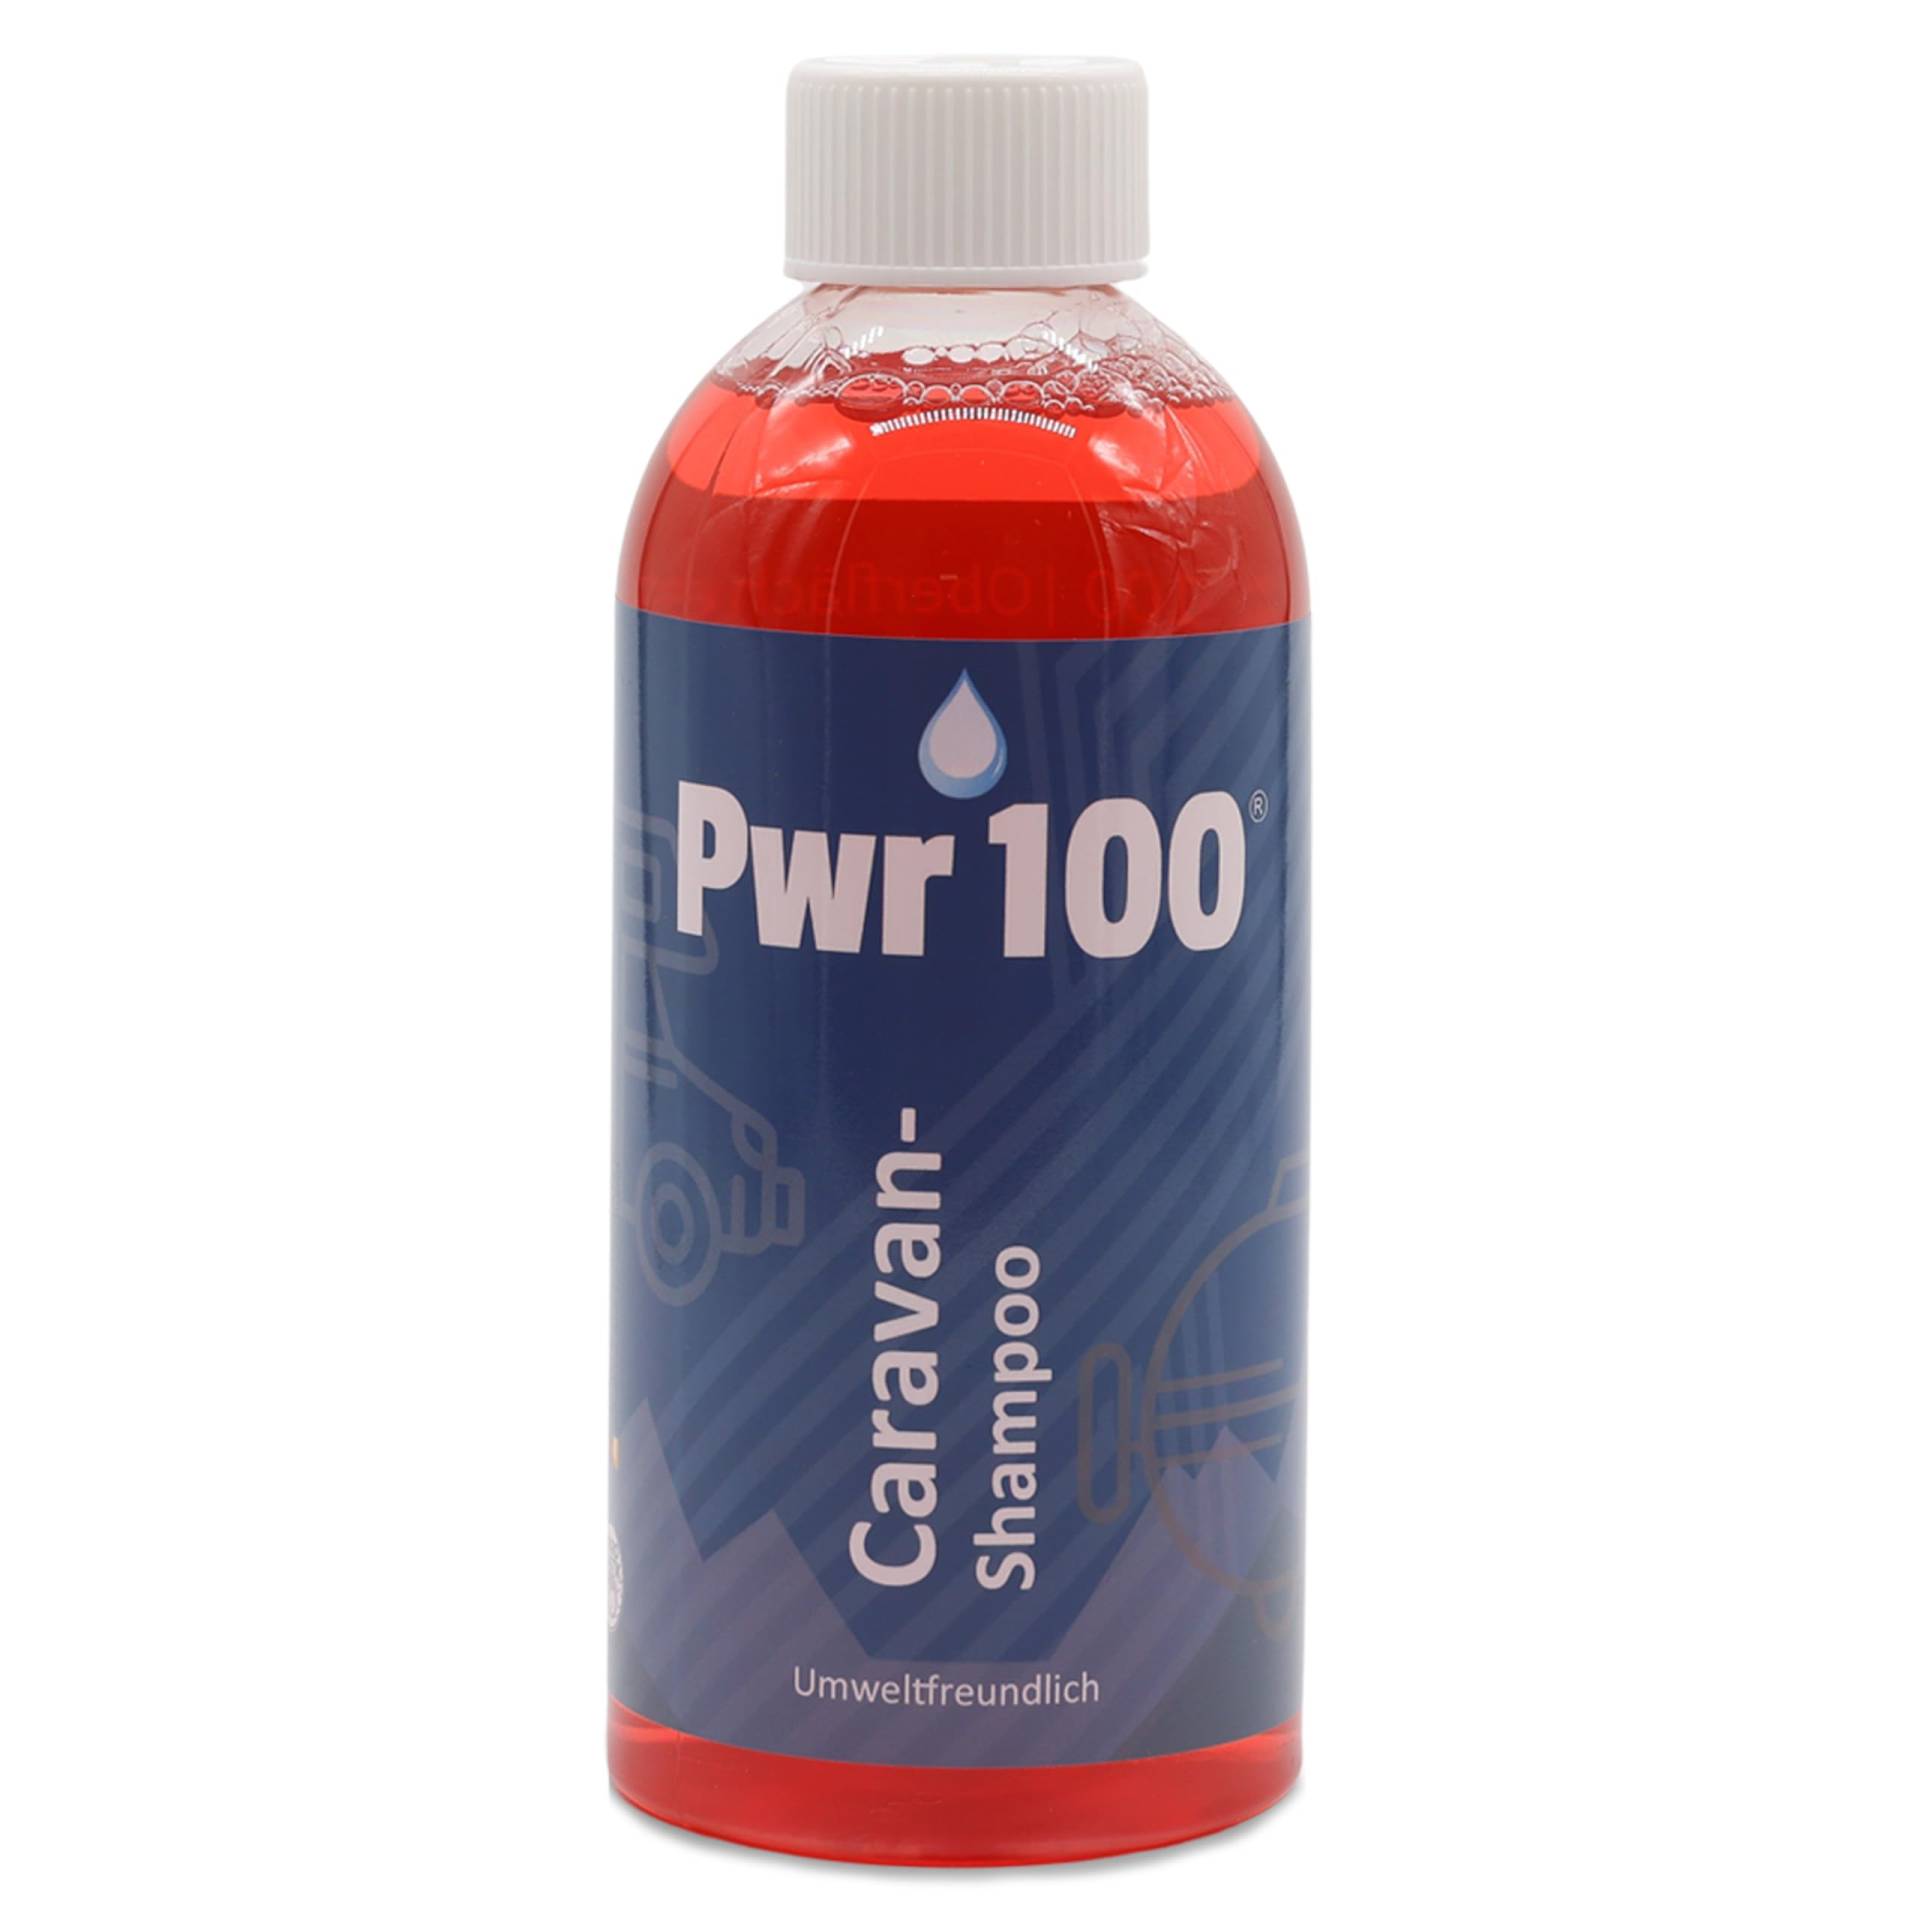 Pwr 100 Caravan-Shampoo | Hochwertige Kraftformel für glänzende und saubere Wohnwagen/Wohnmobile. Umweltfreundlicher & materialschonender Reiniger. von PWR100